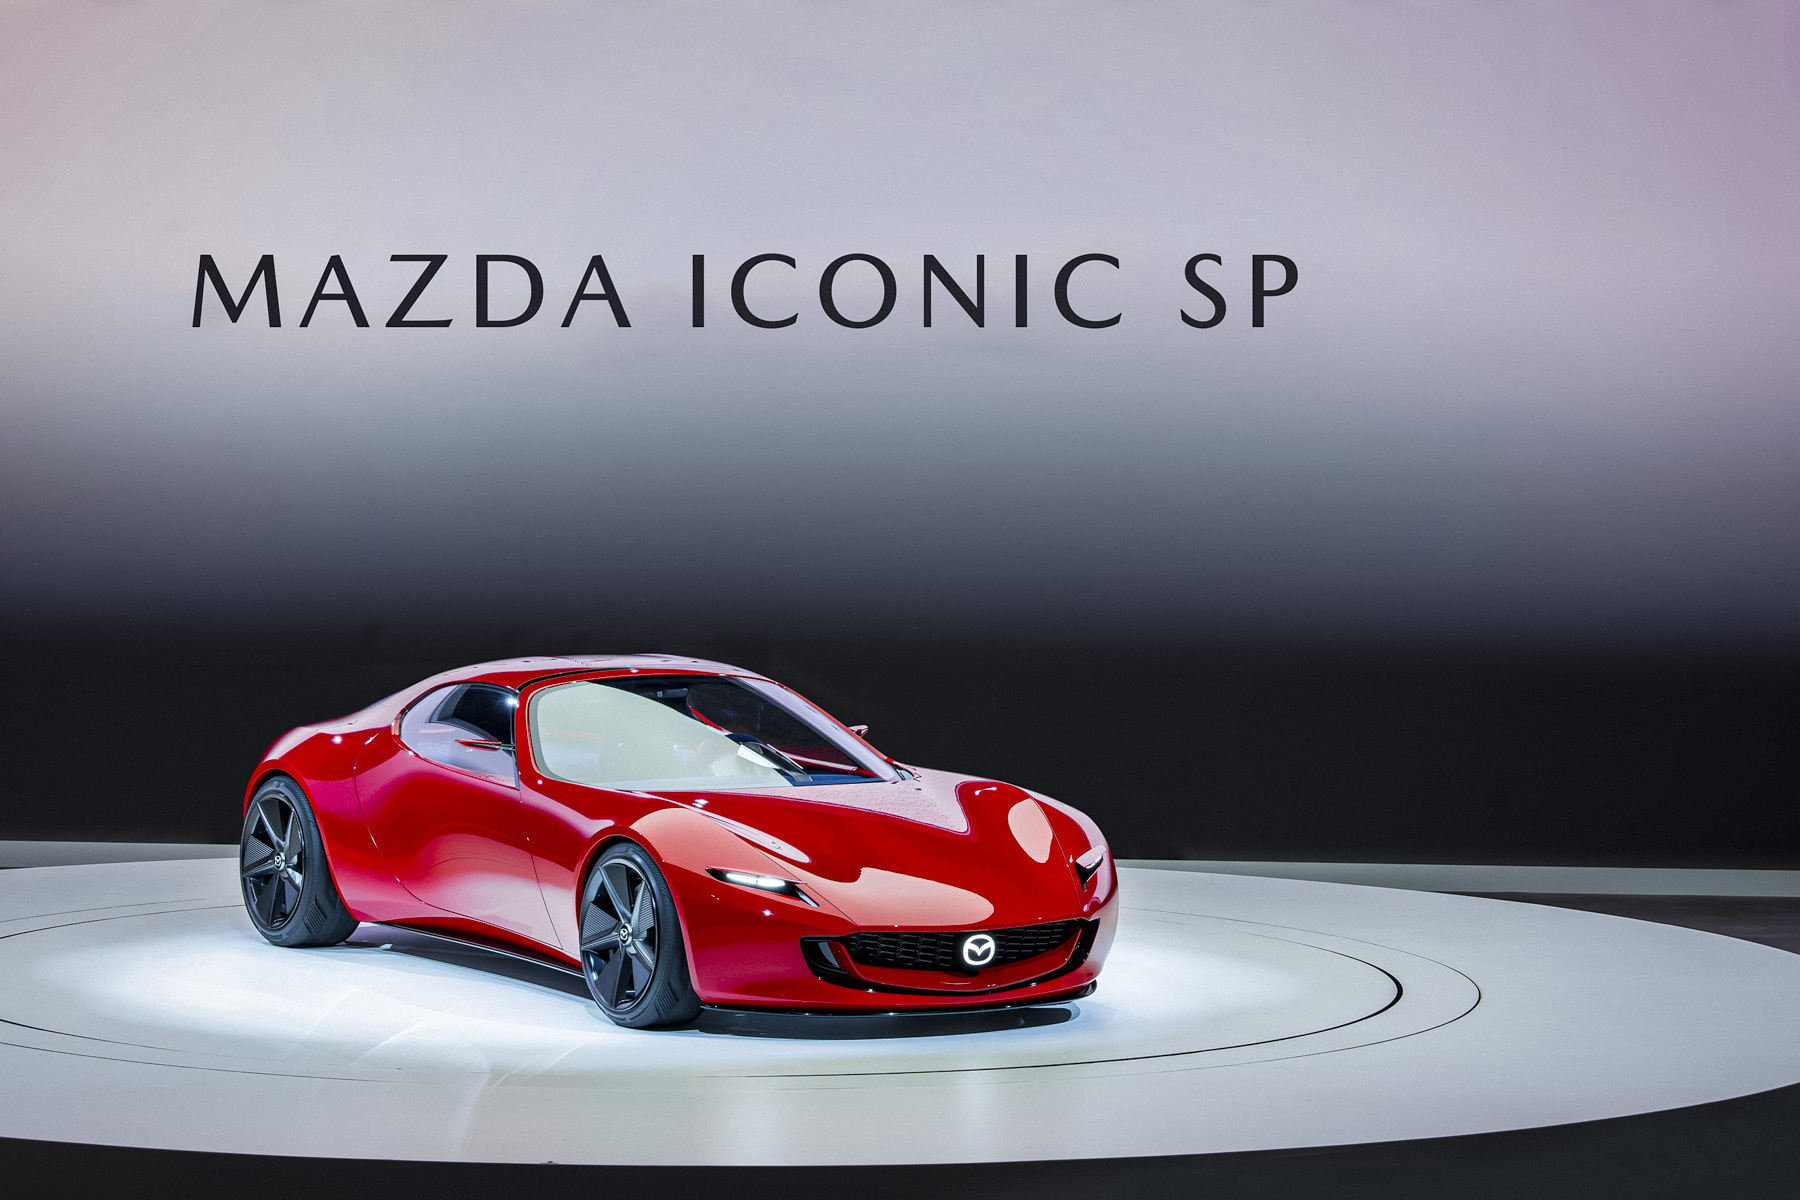 Mazda оснастила новейший спорткар роторным двигателем